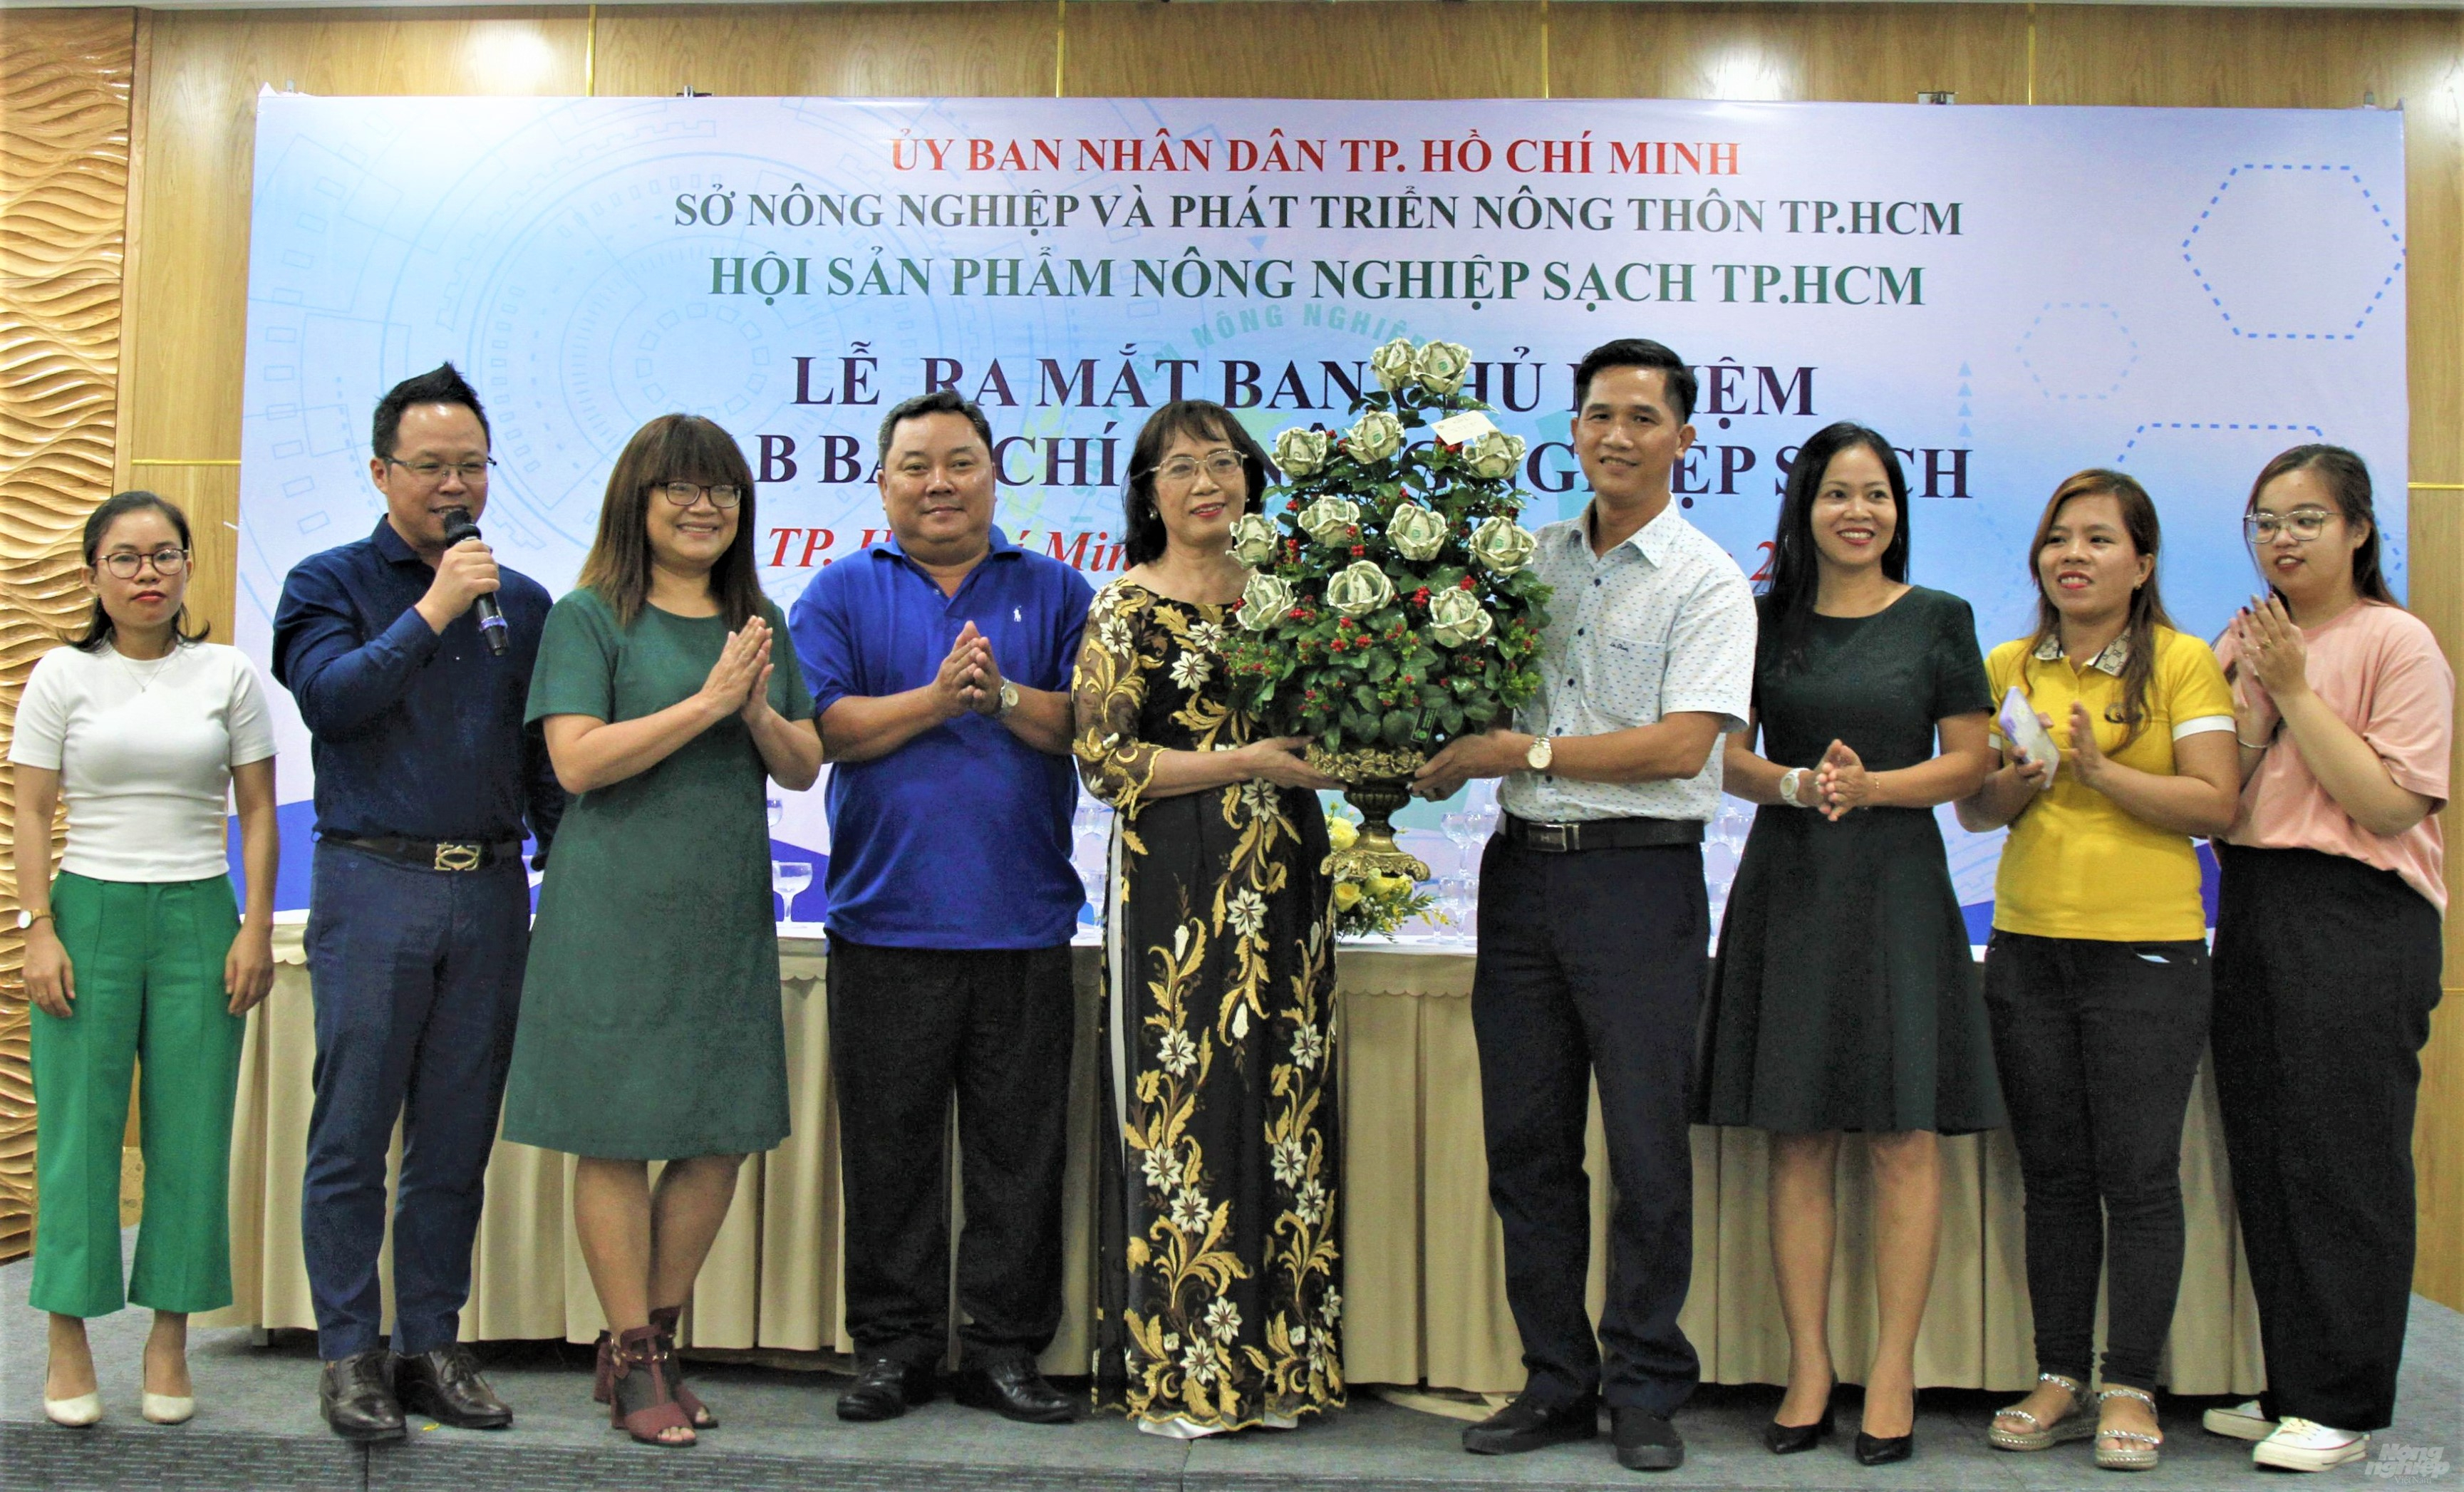 CAPA cũng đã chính thức công bố quyết định thành lập CLB Báo chí sản phẩm Nông nghiệp sạch TP.HCM. Ảnh: Phước Ngọc.